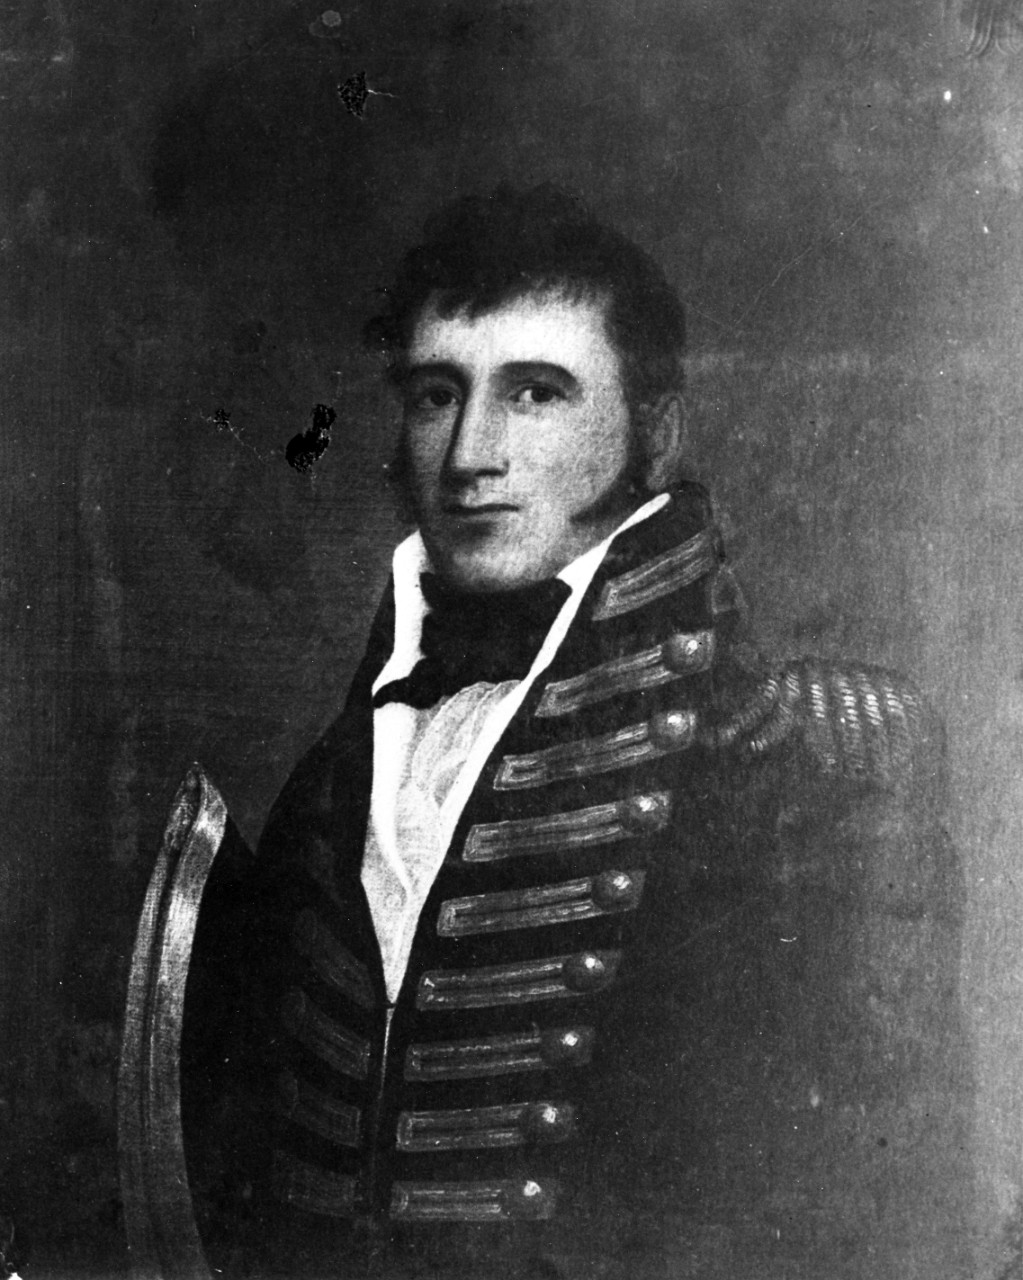 Captain Johnston Blakely, USN